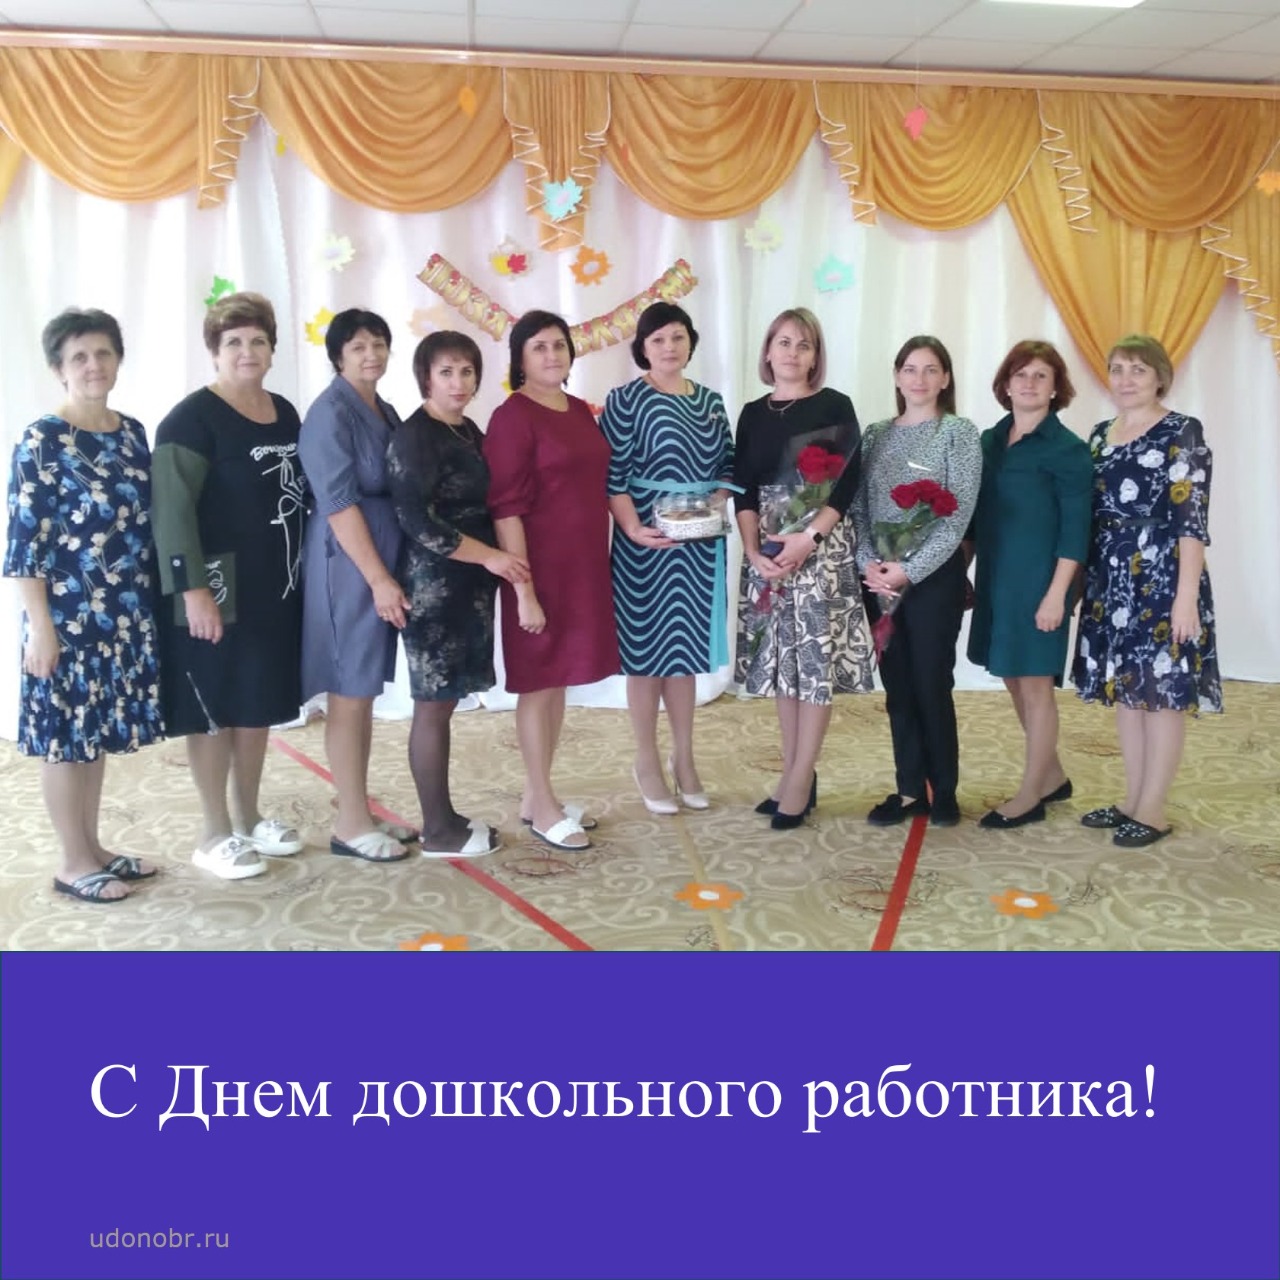 Ирина Борозенцева лично поздравила коллективы детских садов с Днем дошкольного работника